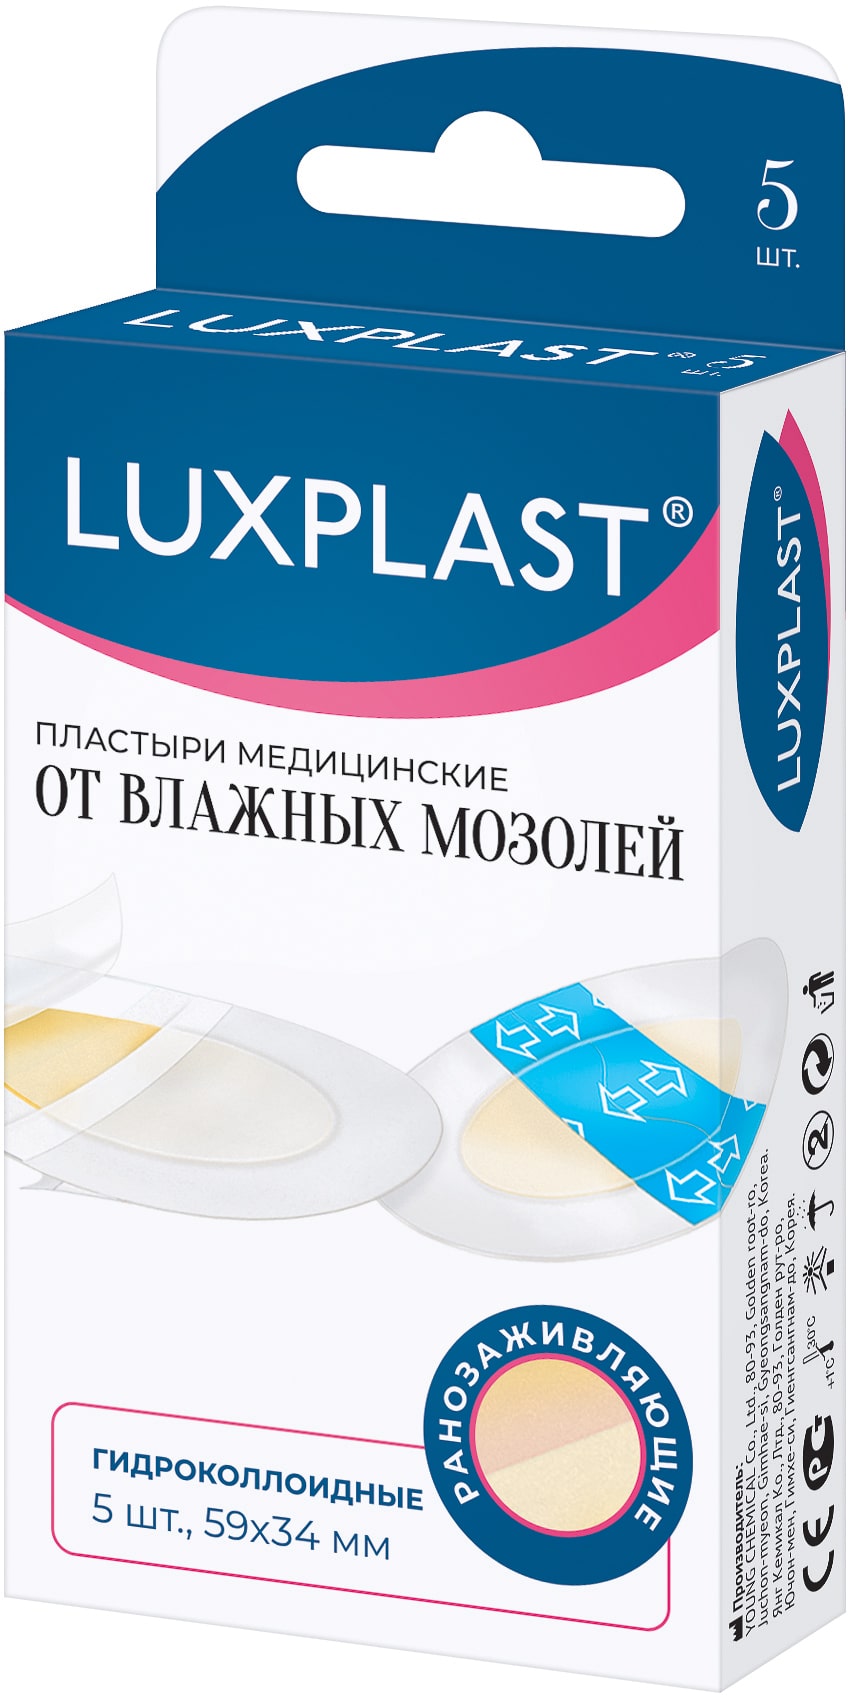 Luxplast Пластыри медицинские гидроколлоидные от влажных моз